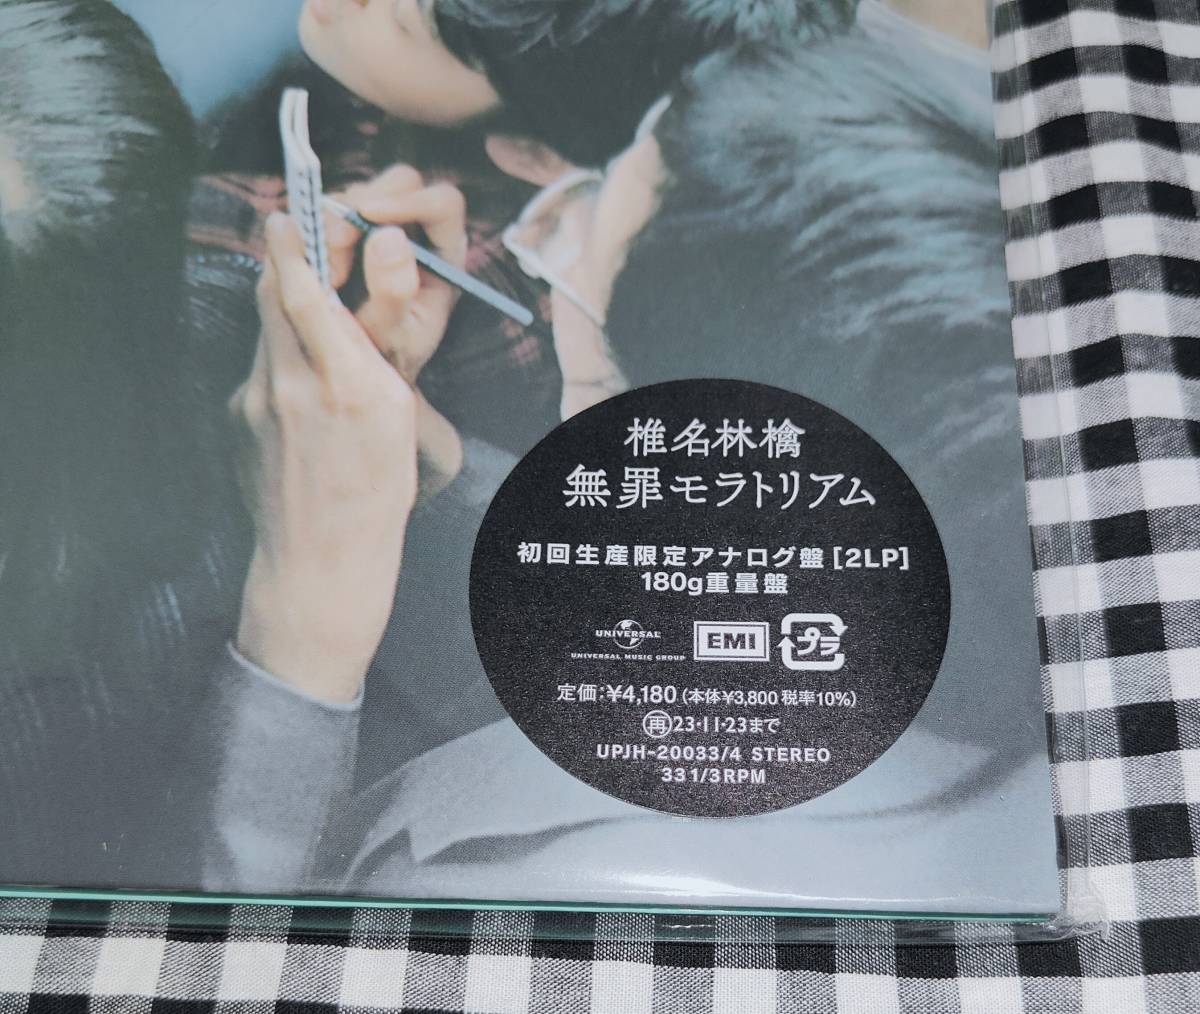 椎名林檎 無罪モラトリアム 初回生産限定アナログ盤 重量盤